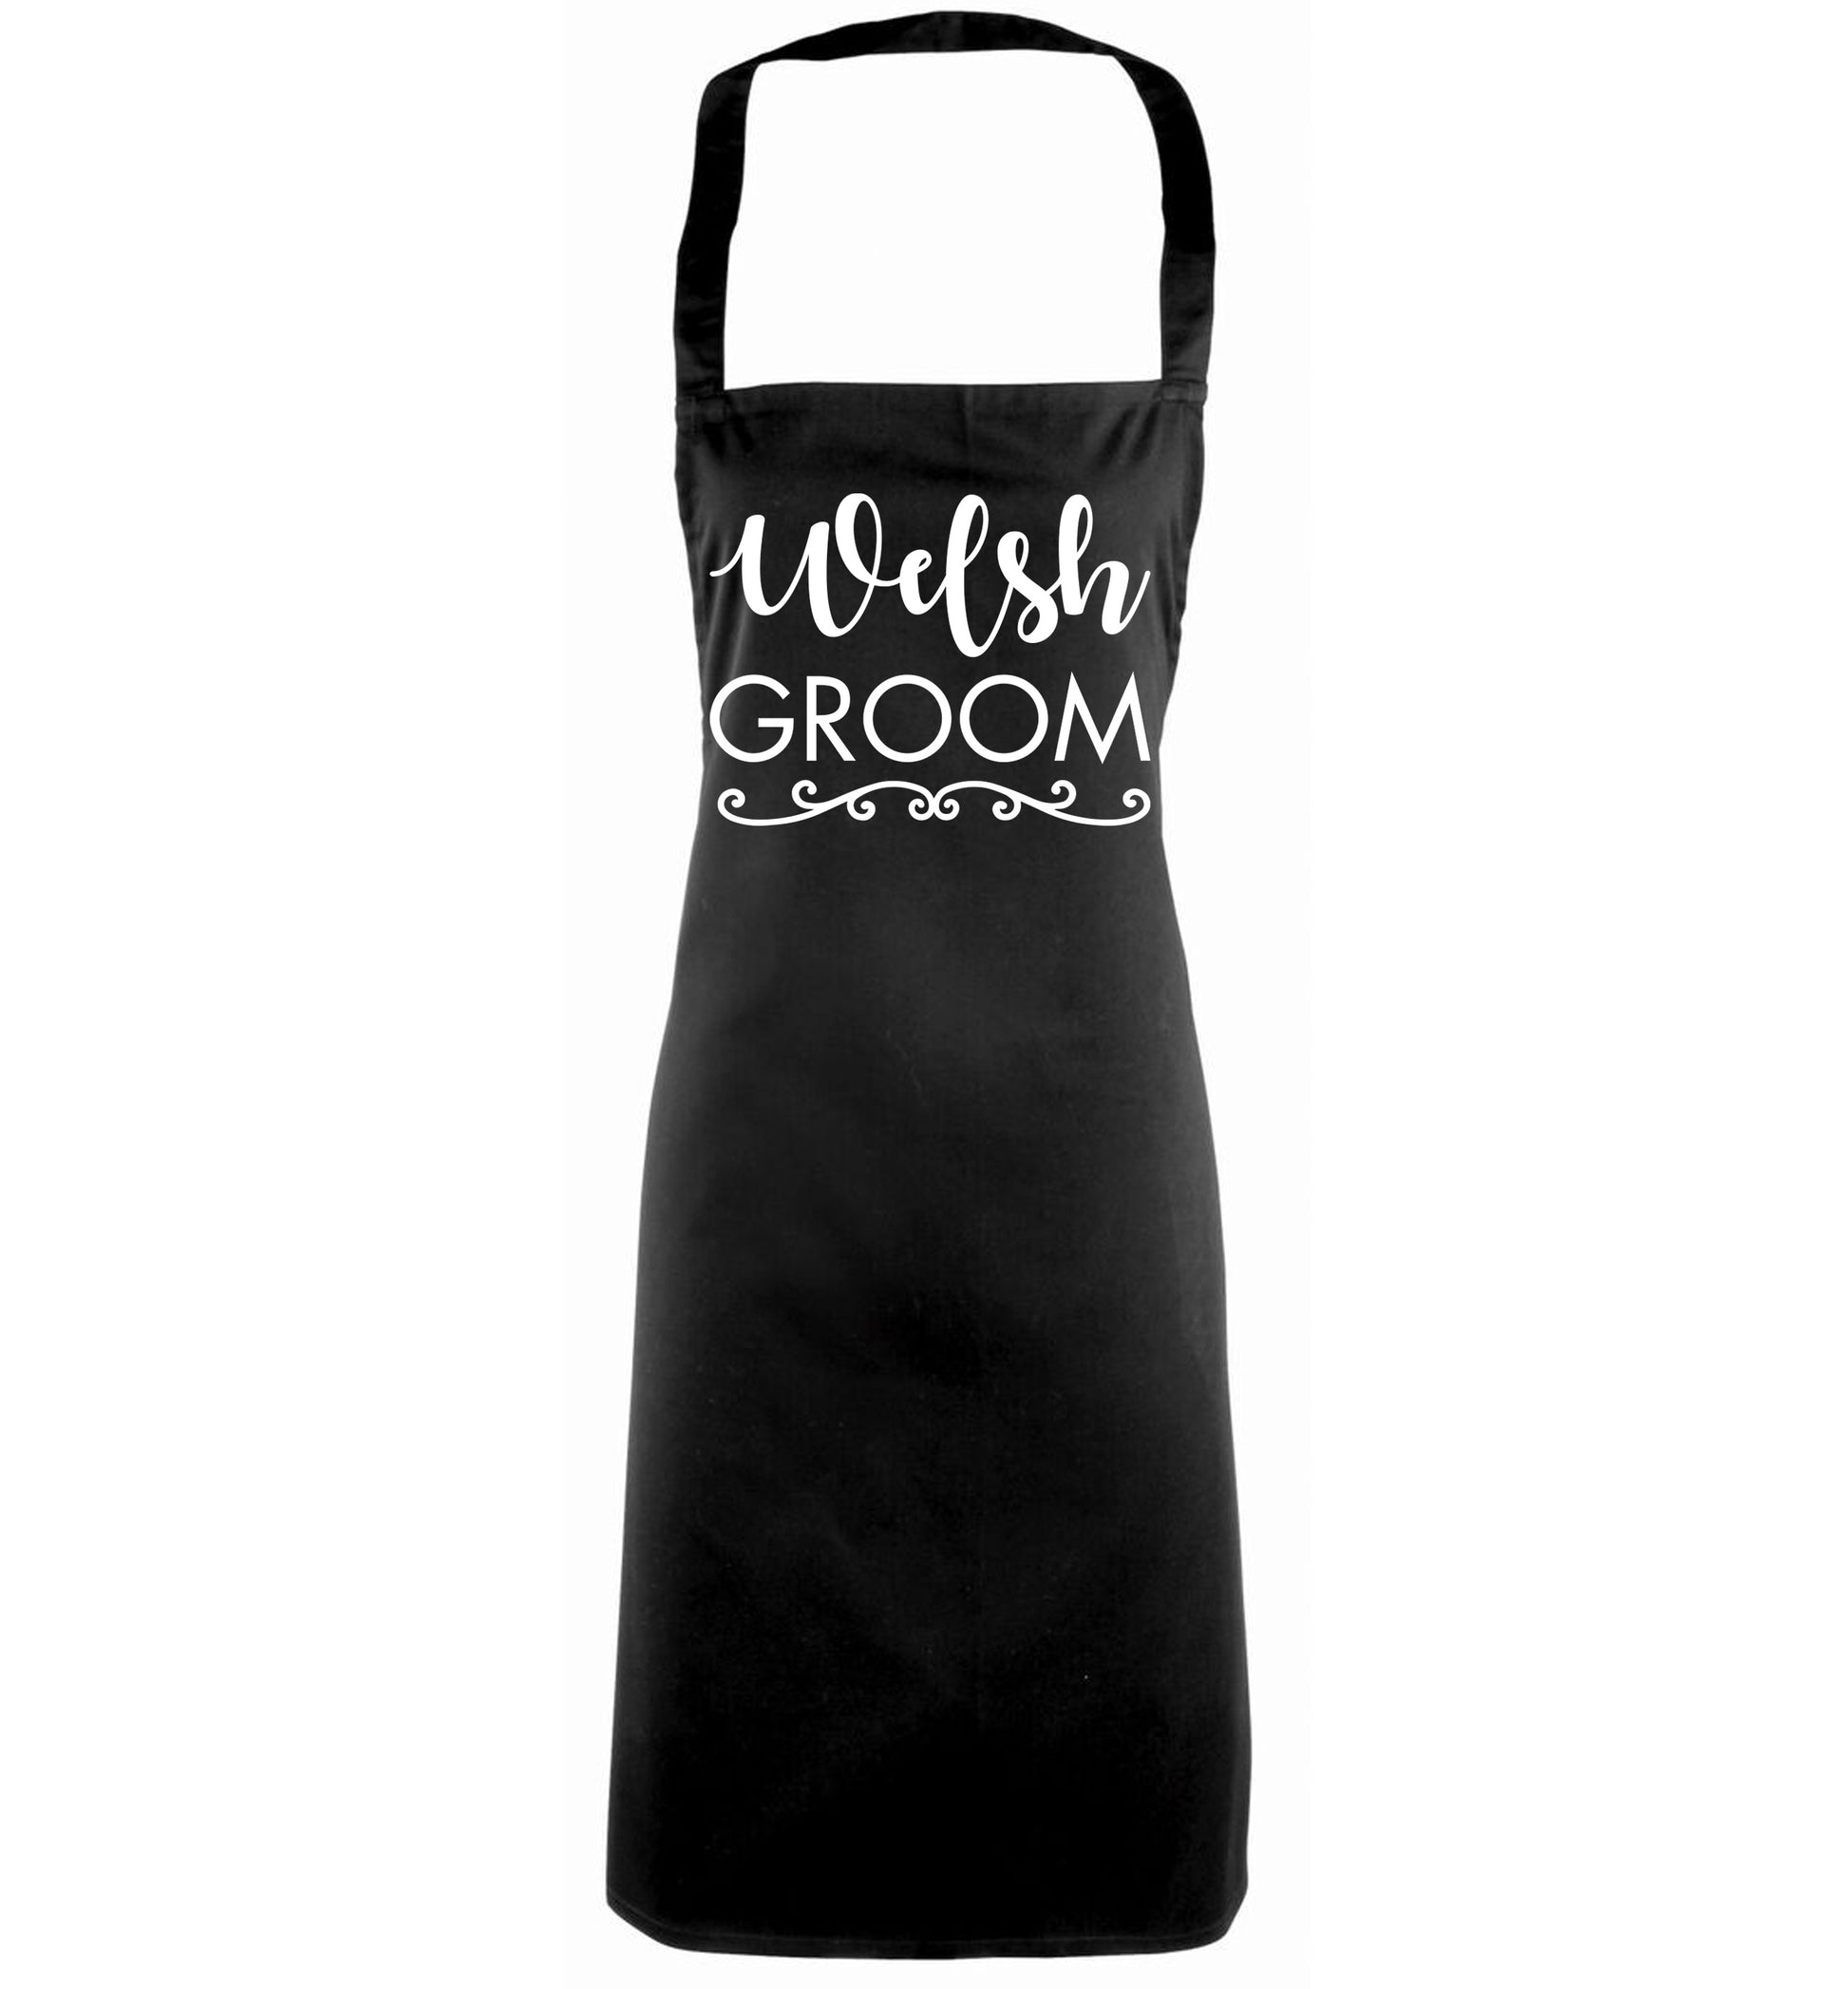 Welsh groom black apron